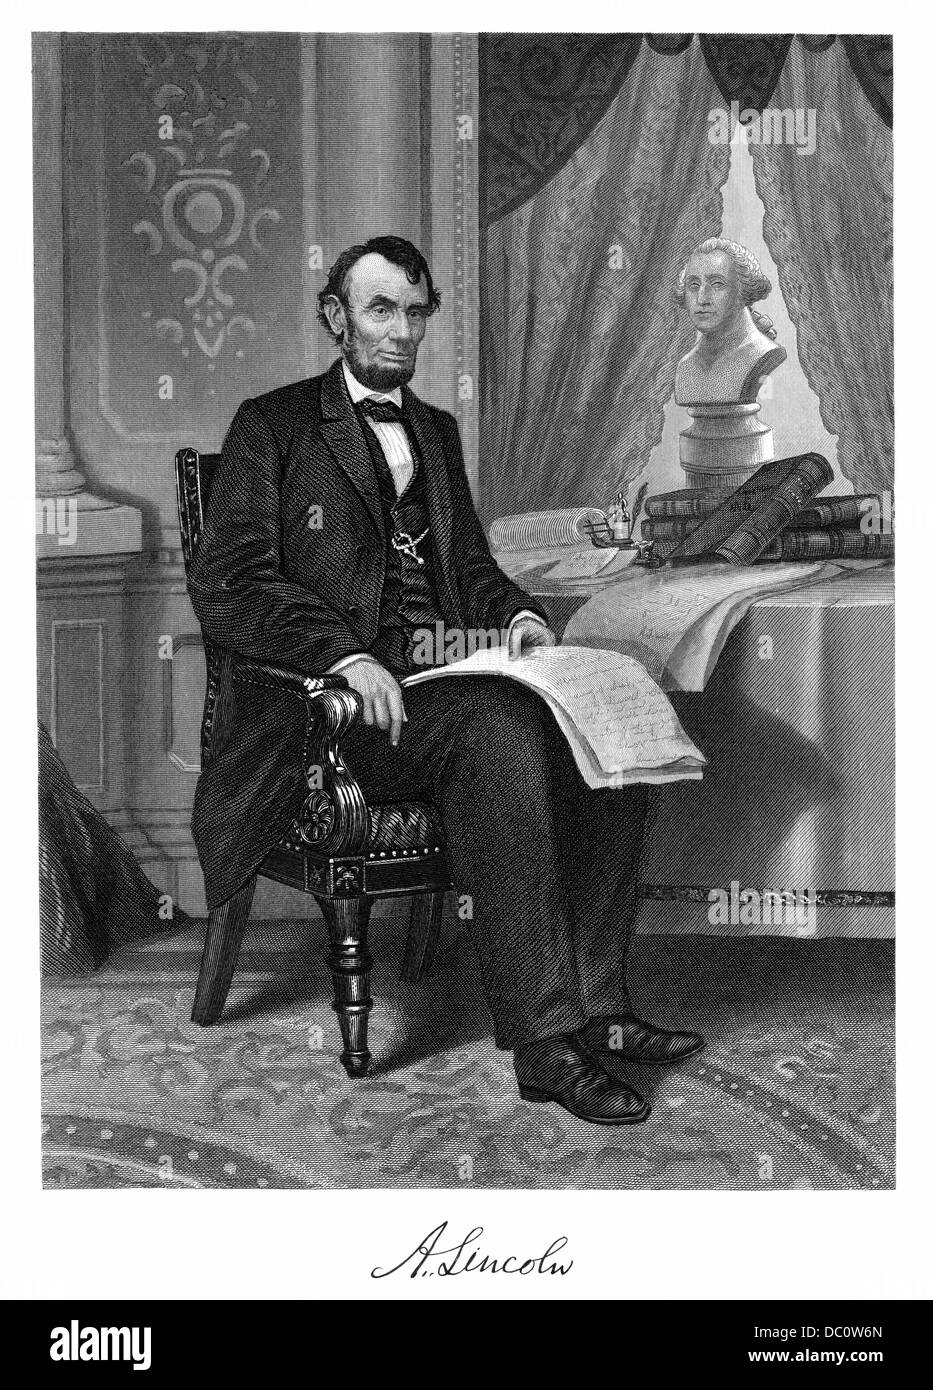 Années 1860 Années 1800 LE PRÉSIDENT ABRAHAM LINCOLN PORTRAIT ASSIS AVEC LA SIGNATURE DE LA PEINTURE PAR NAST Banque D'Images